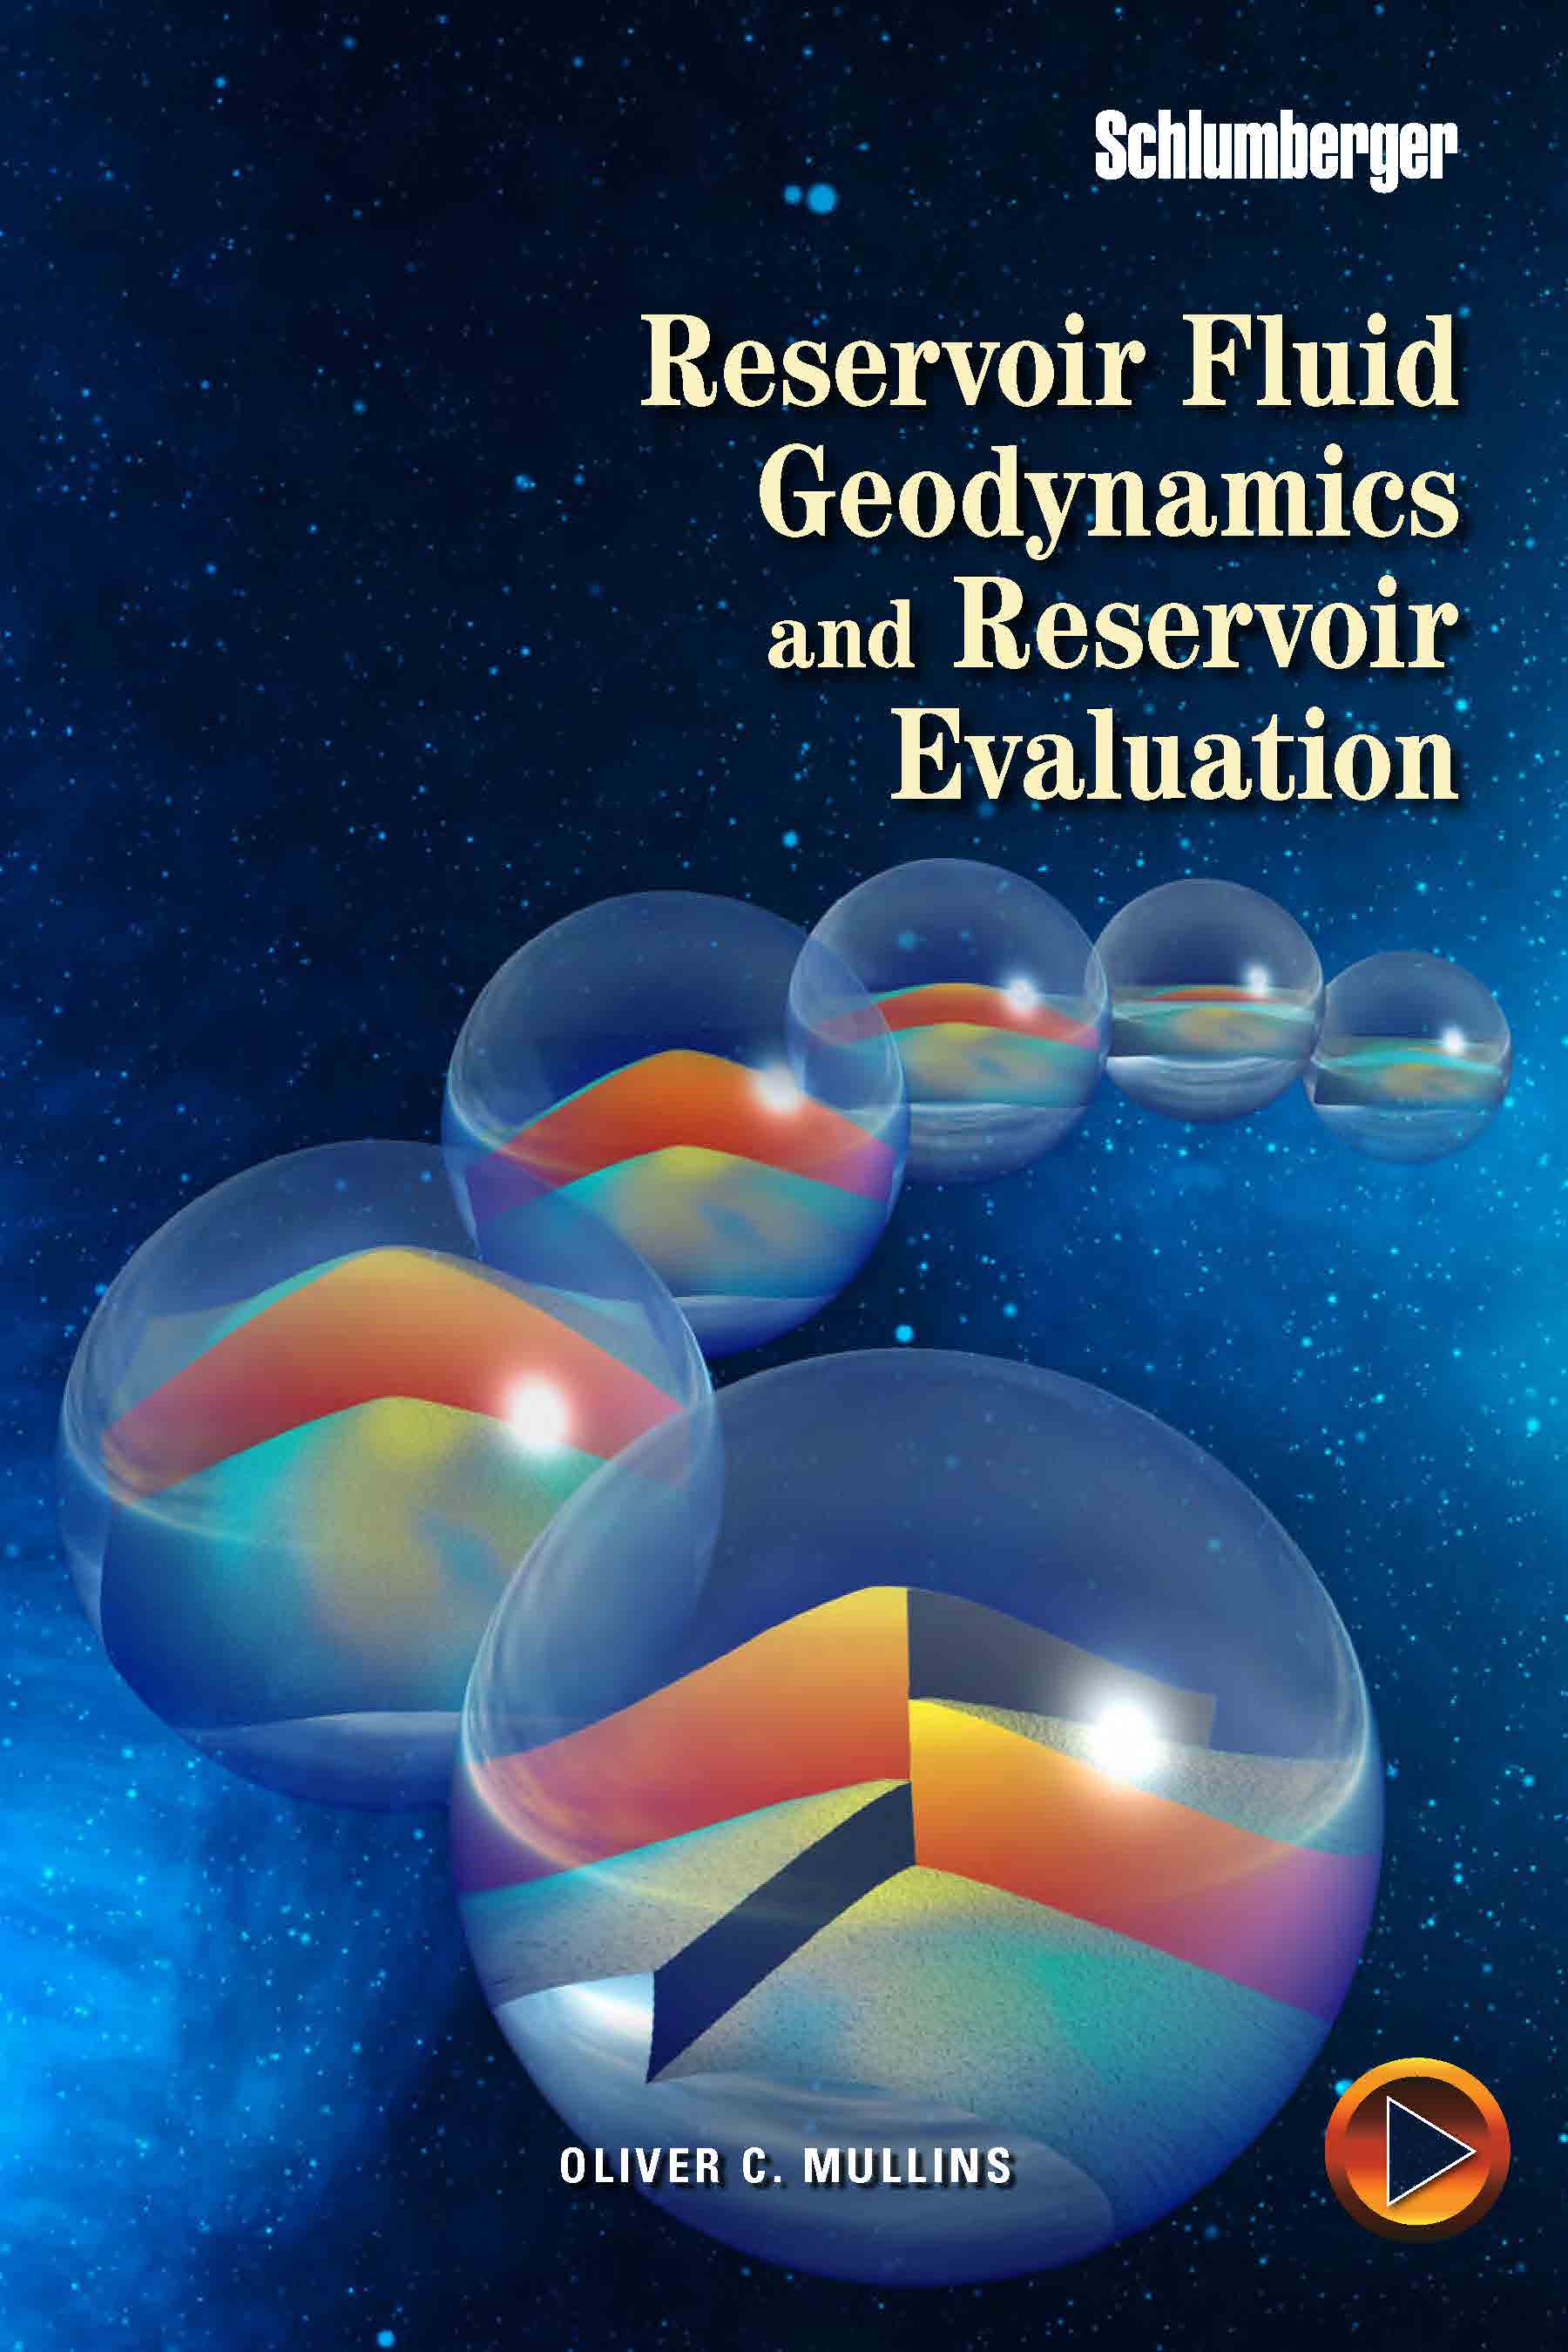 Reservoir Fluid Geodynamics (RFG) and Reservoir Evaluation